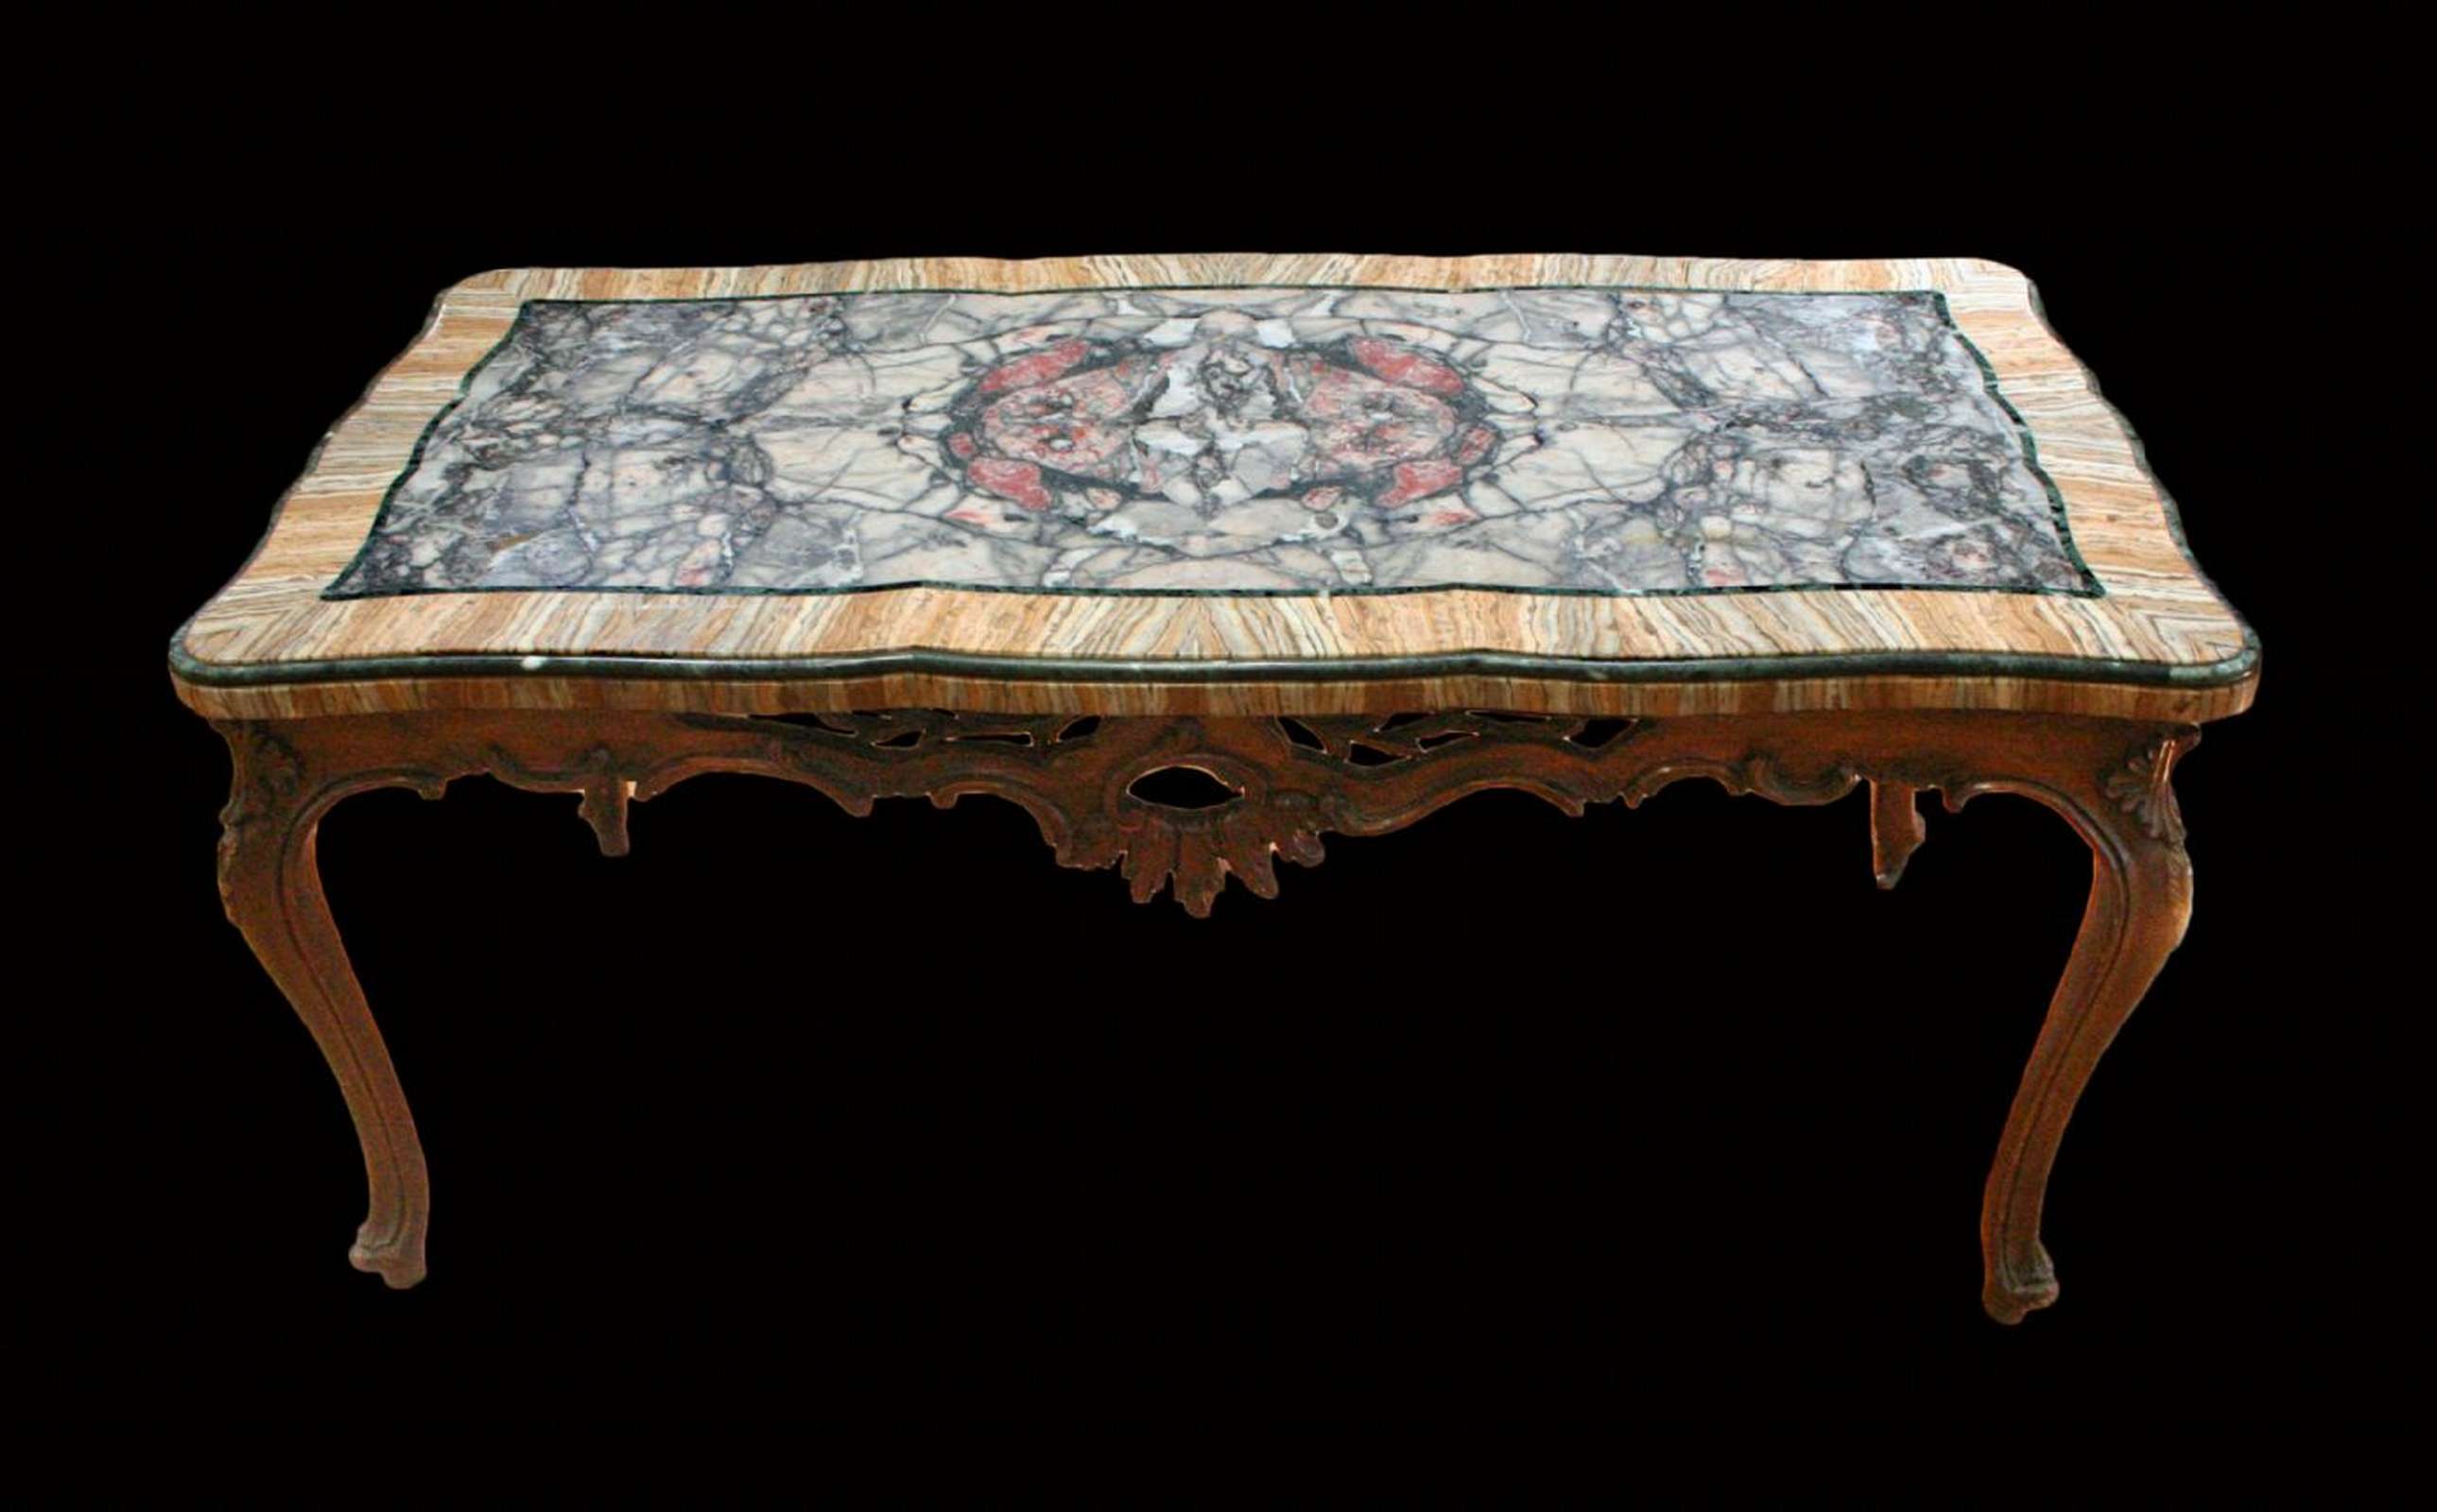 Tavolo antico in marmo con base in legno. Epoca 1800. - Tavoli in vari materiali - Tavoli e complementi - Prodotti - Antichità Fiorillo